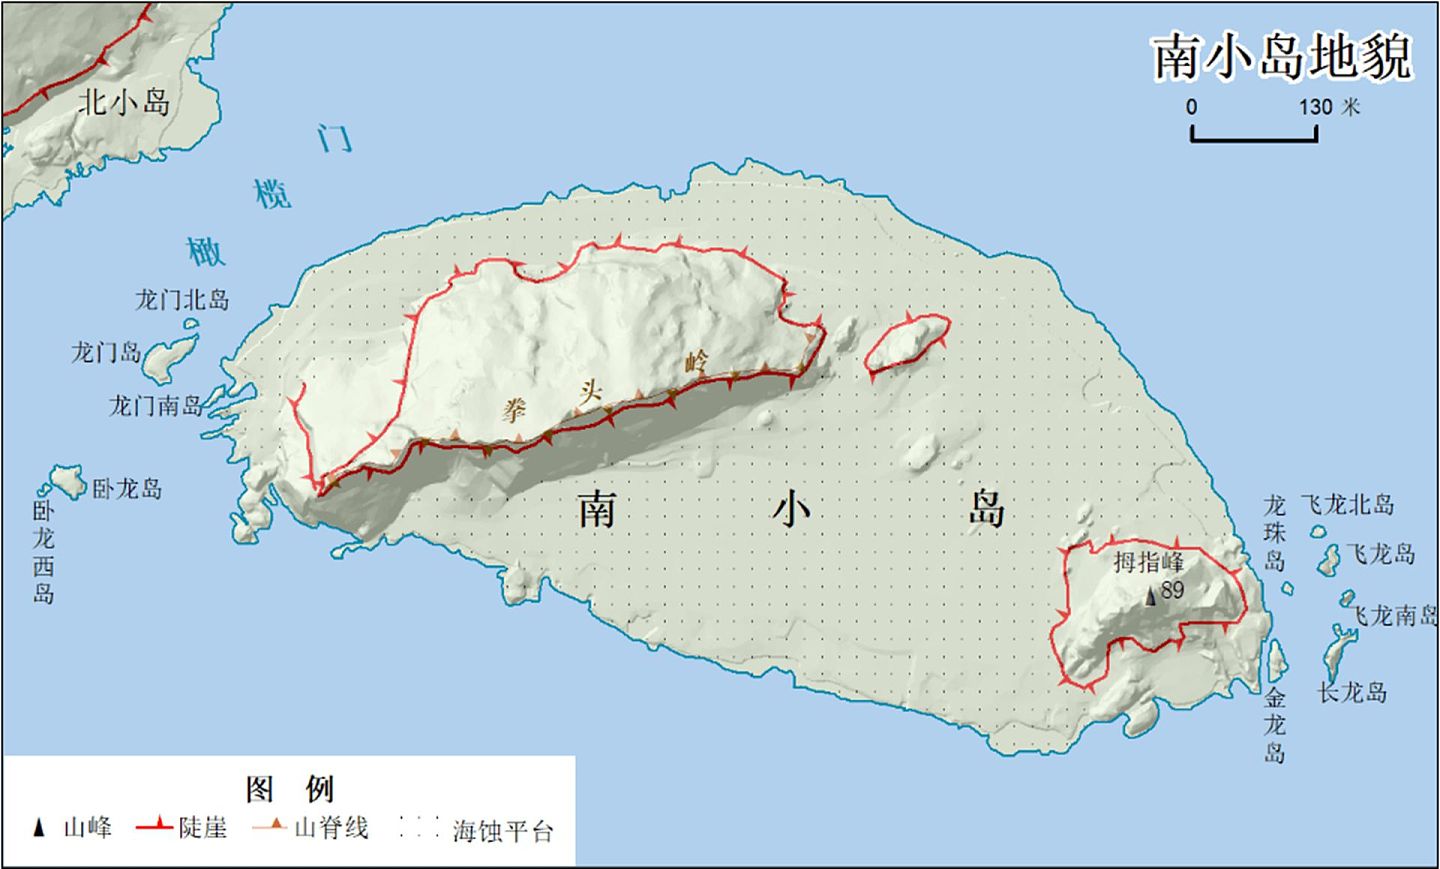 在钓鱼岛争端持续的当下，中国官方公布了钓鱼岛相关地形数据。（中国自然资源部官网）